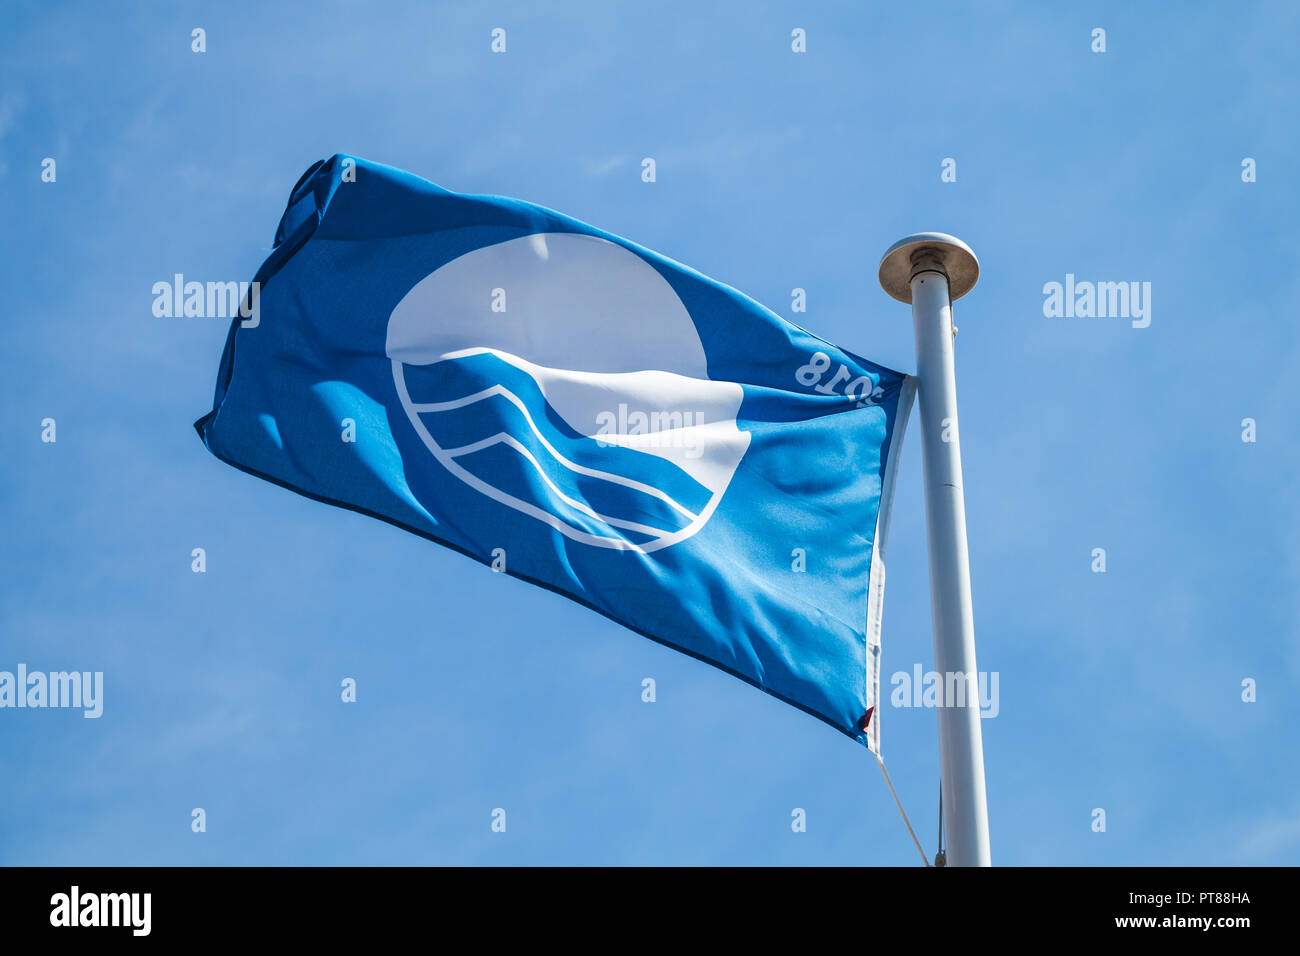 Blue Flag beach, waving flag over cloudy sky Stock Photo